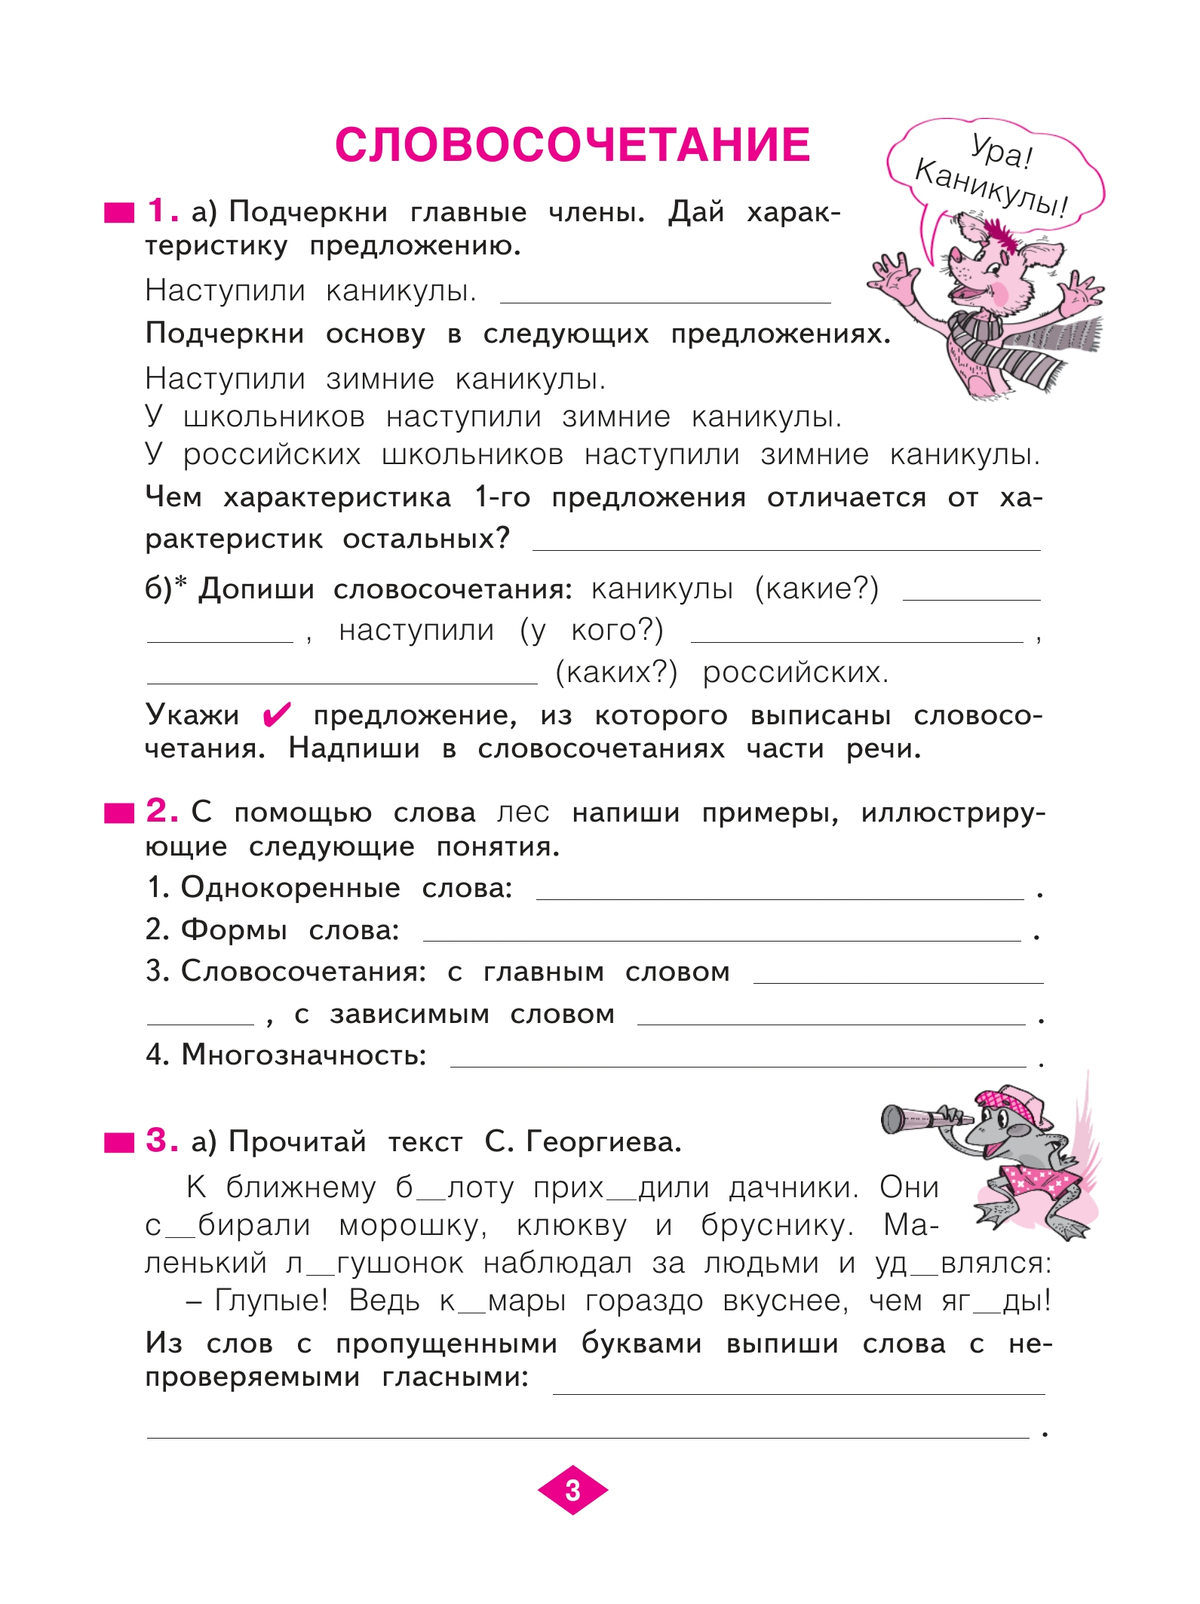 Русский язык. Рабочая тетрадь. 3 класс. В 4-х частях. Часть 3 5